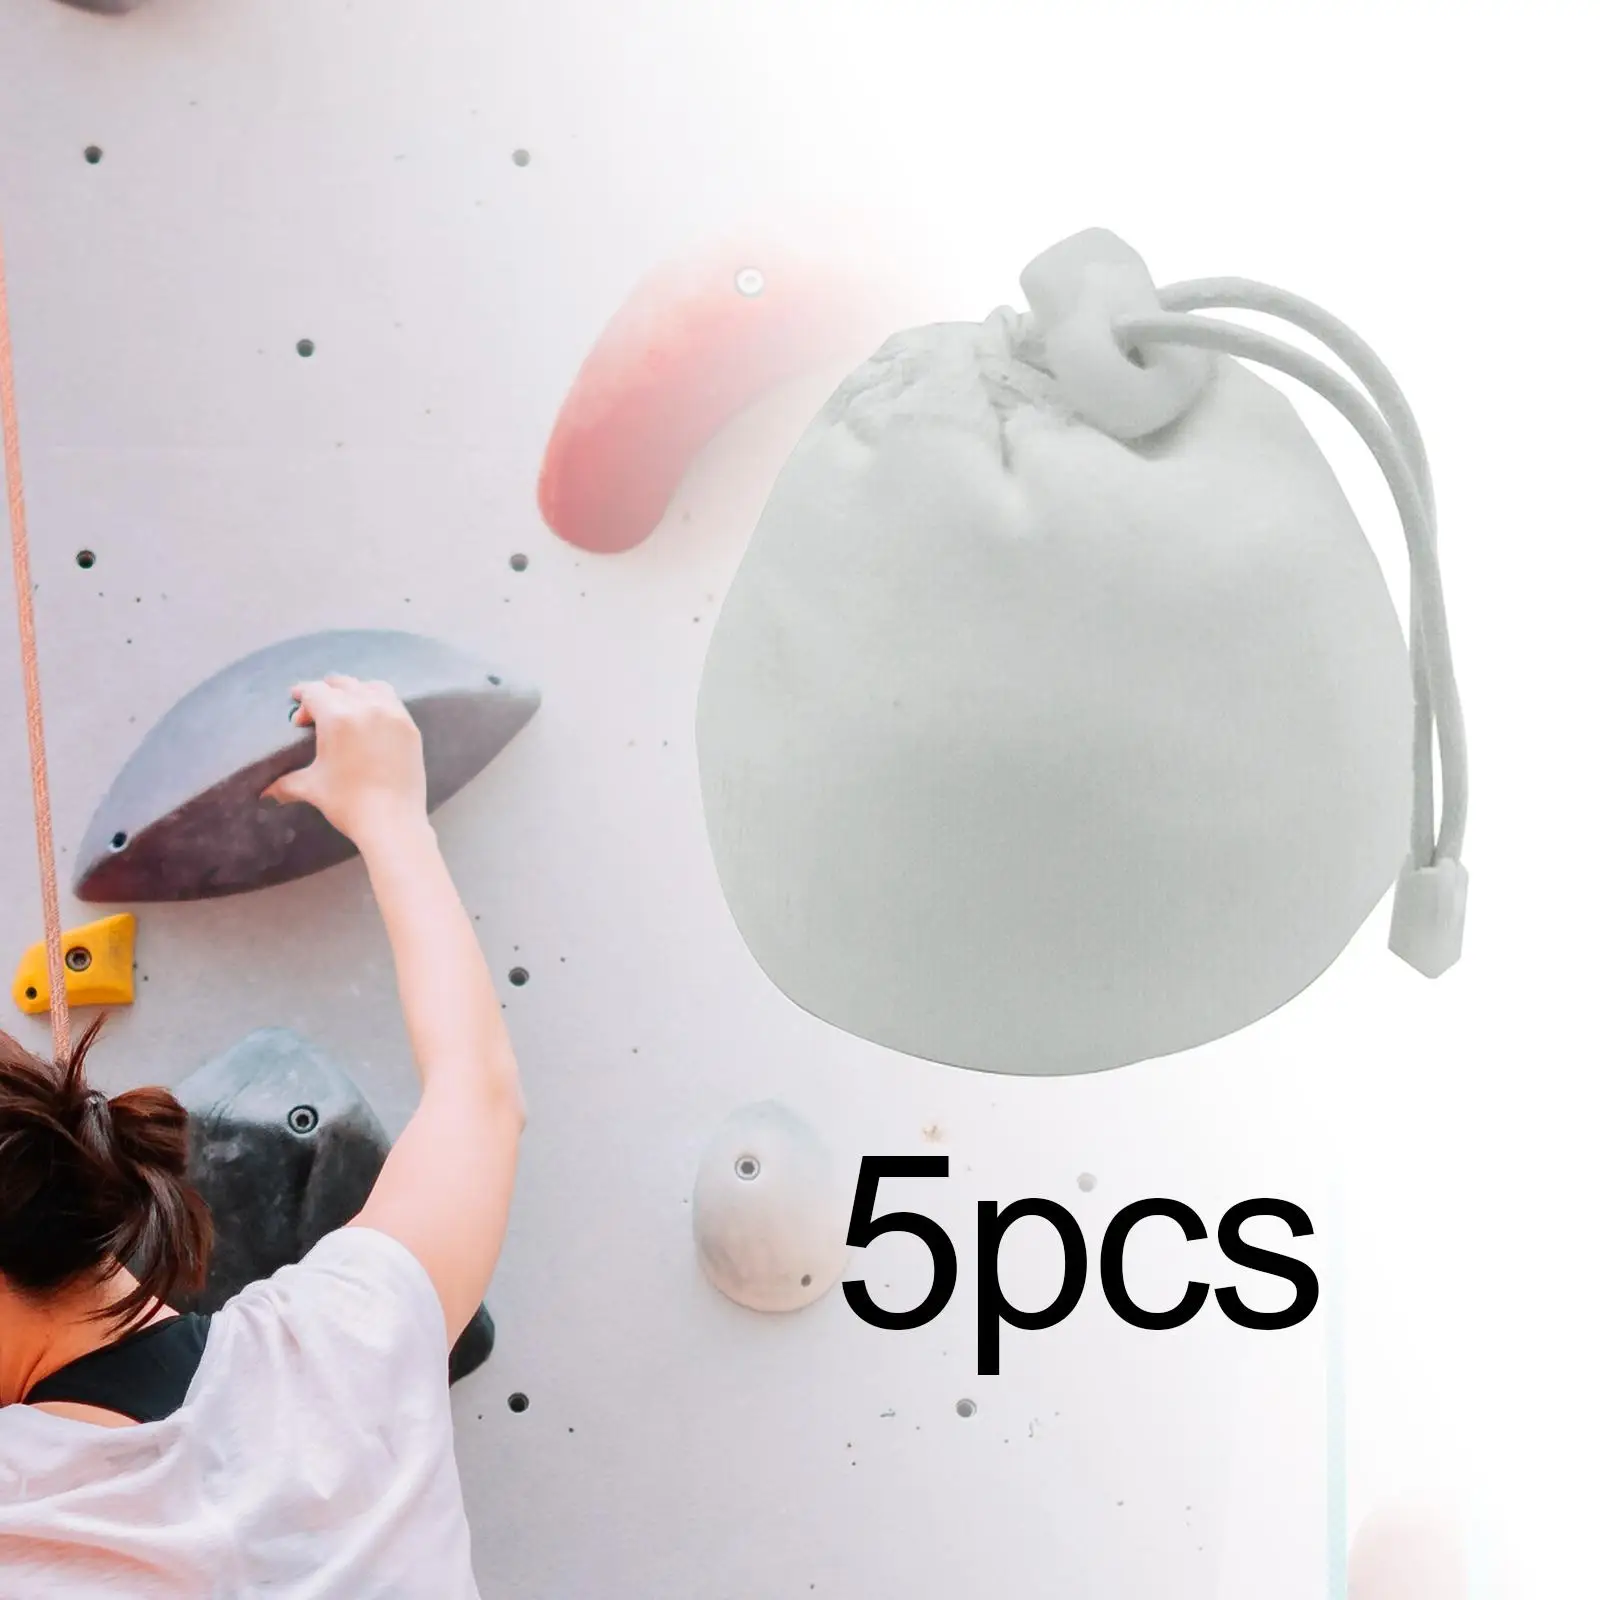 5x Chalk Ball Bag Nonslip Powder Packaging Sock for Deadlifting Bouldering